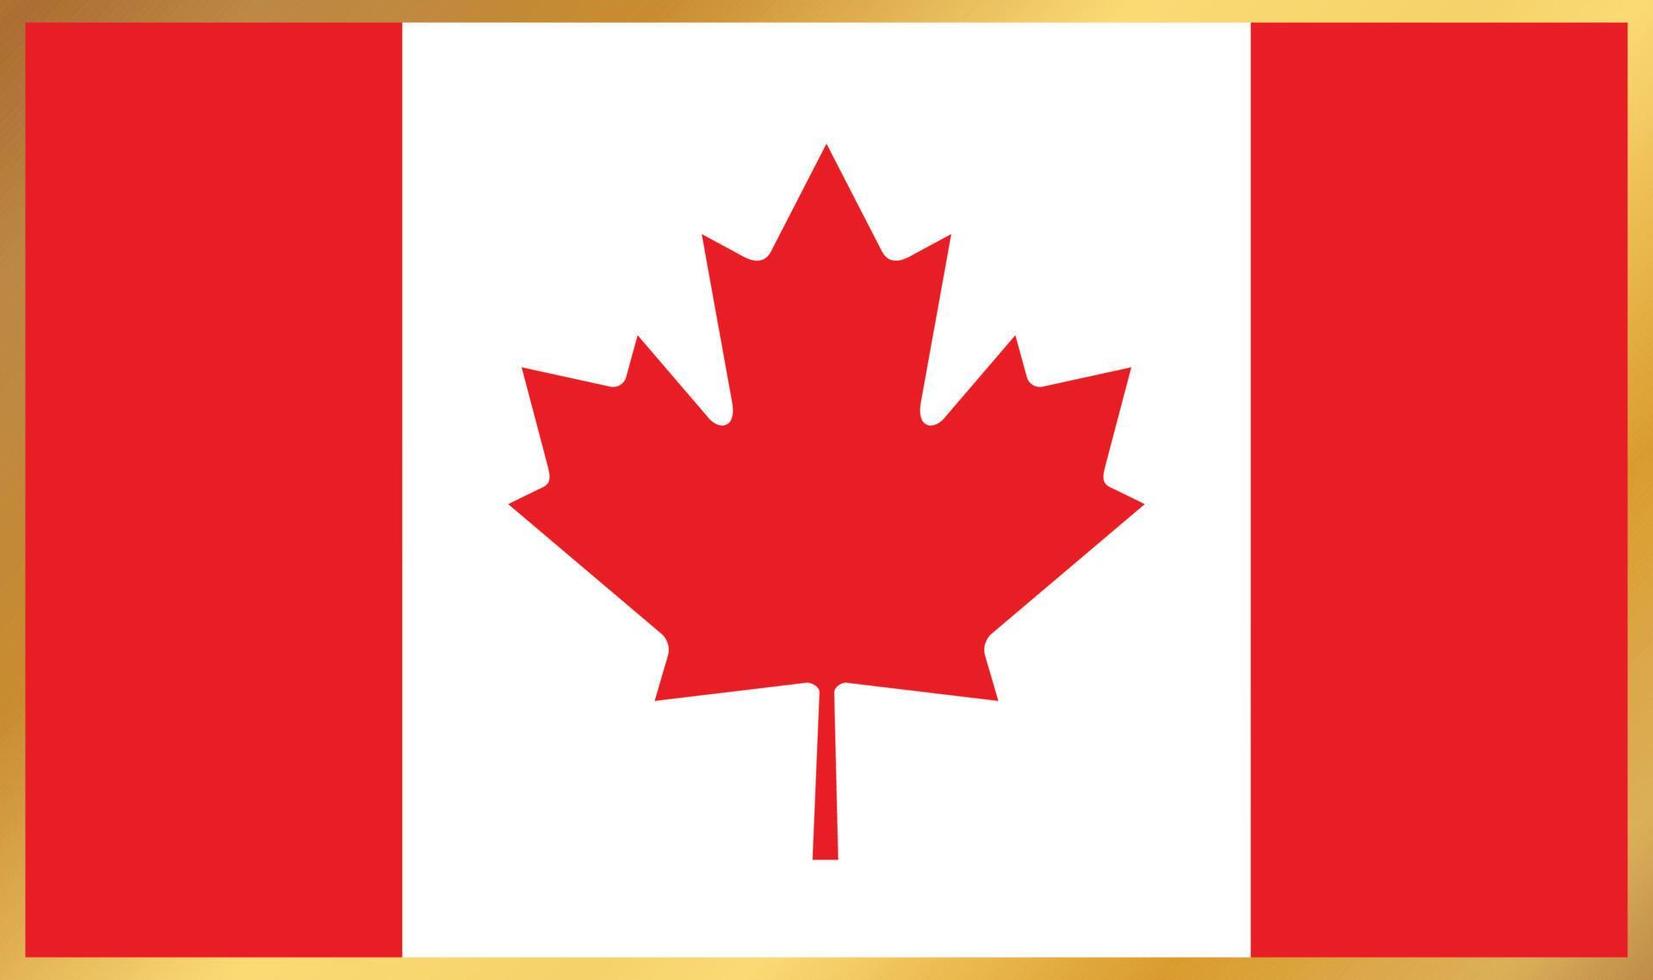 bandera de canadá, ilustración vectorial vector